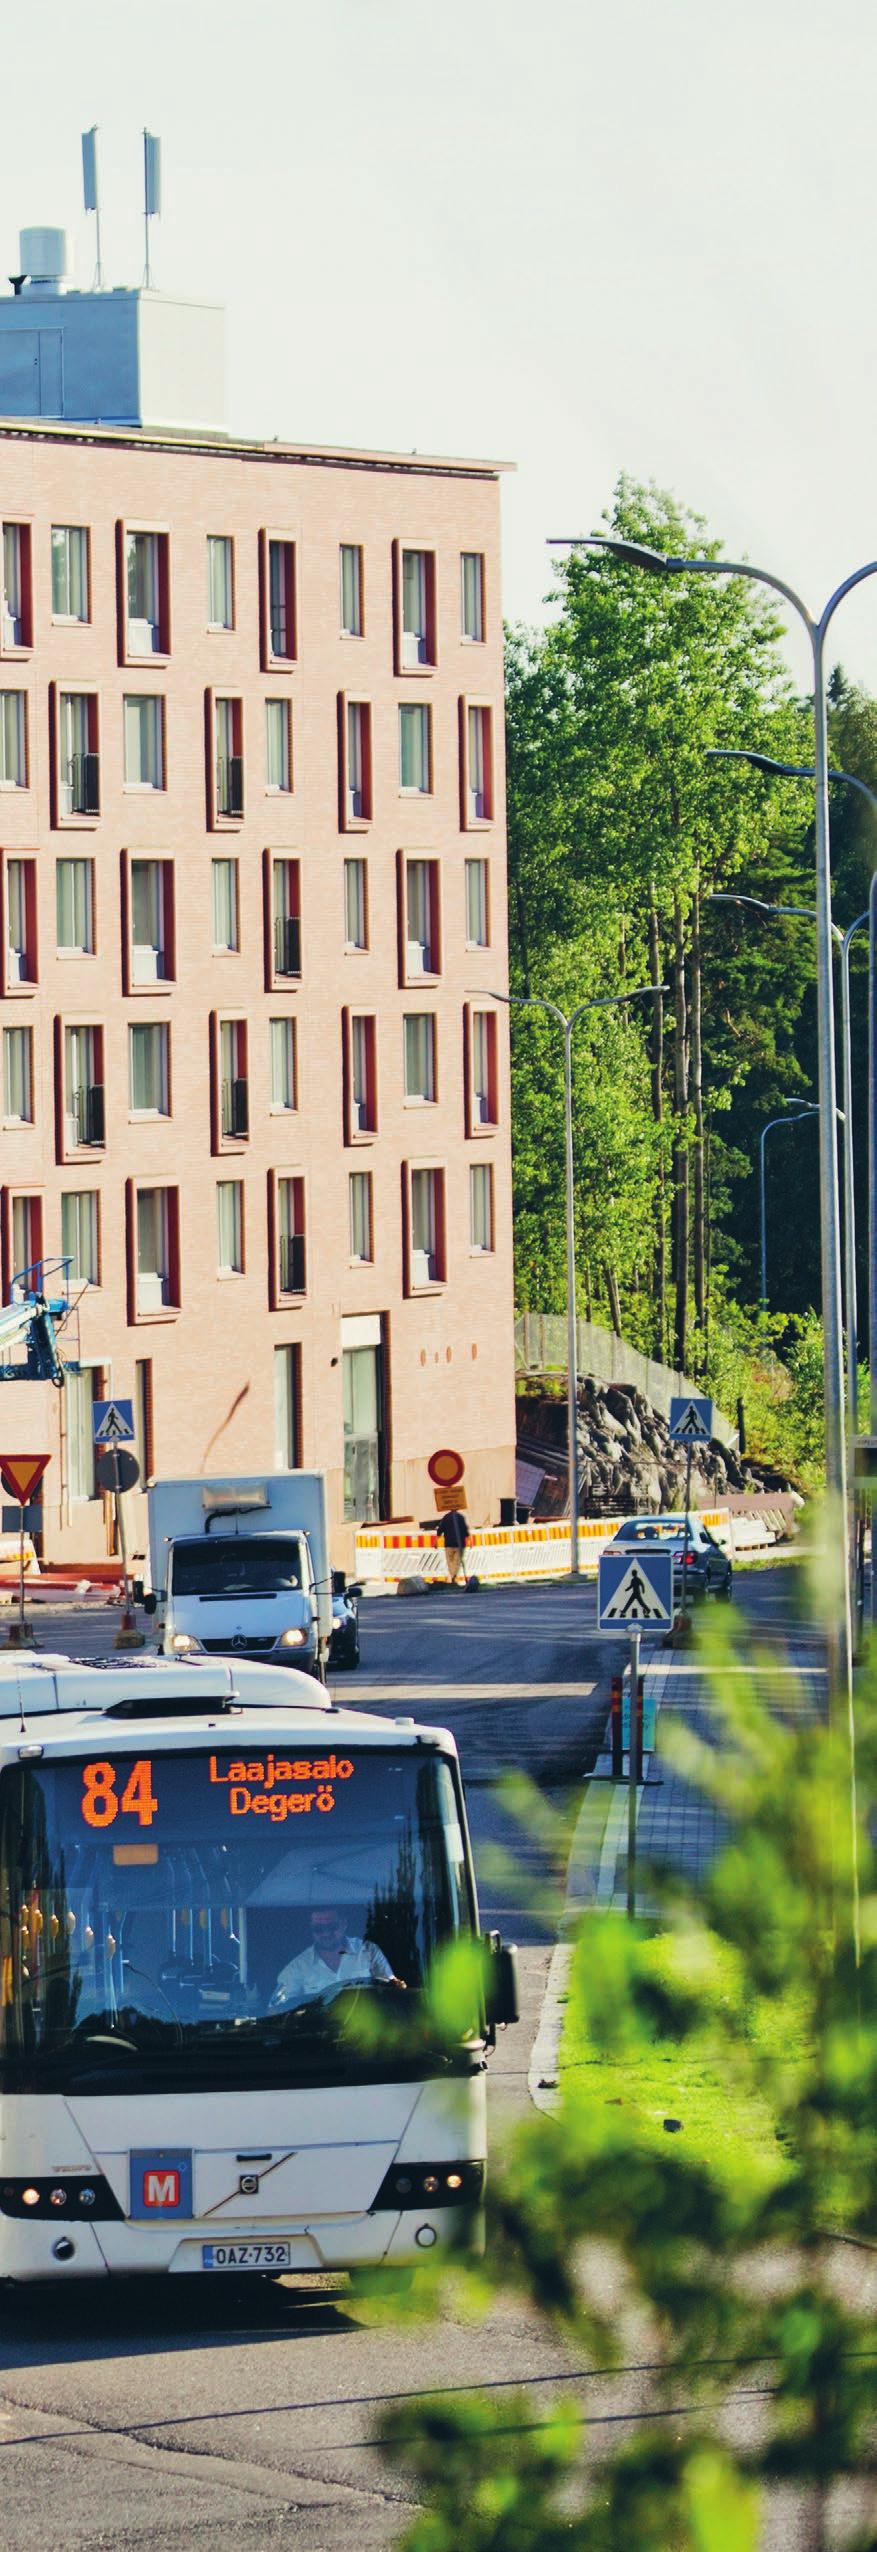 Liikenneyhteydet Henkilöautolla Kruunuvuorenrantaan kuljetaan Herttoniemen liikenneympyrän kautta. Julkinen liikenne sujuu metrolla ja kahdella liityntäbussilla (84 ja 88).